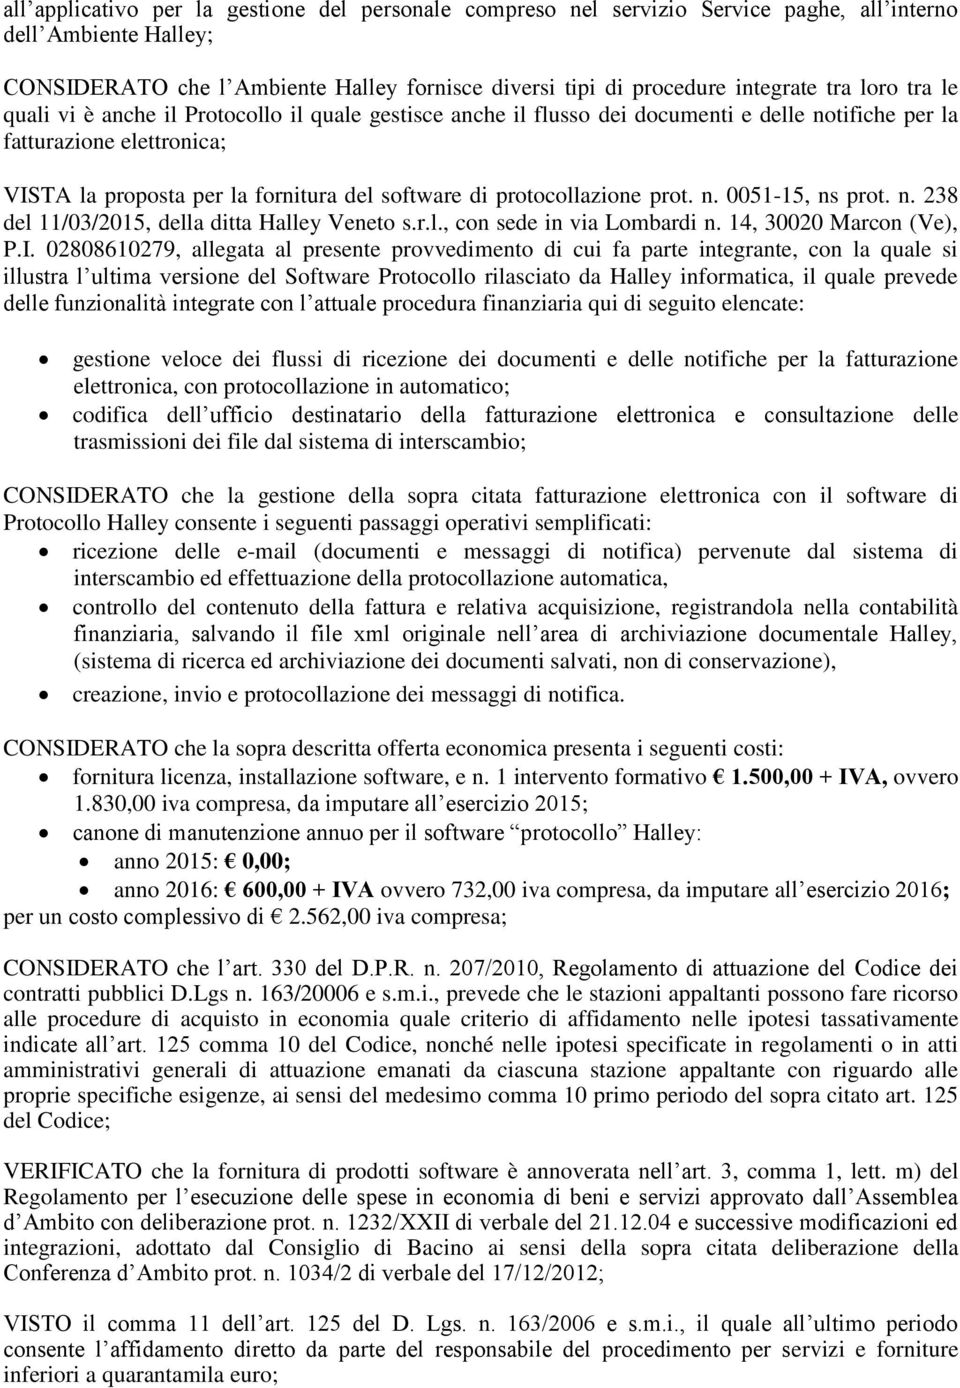 protocollazione prot. n. 0051-15, ns prot. n. 238 del 11/03/2015, della ditta Halley Veneto s.r.l., con sede in via Lombardi n. 14, 30020 Marcon (Ve), P.I.